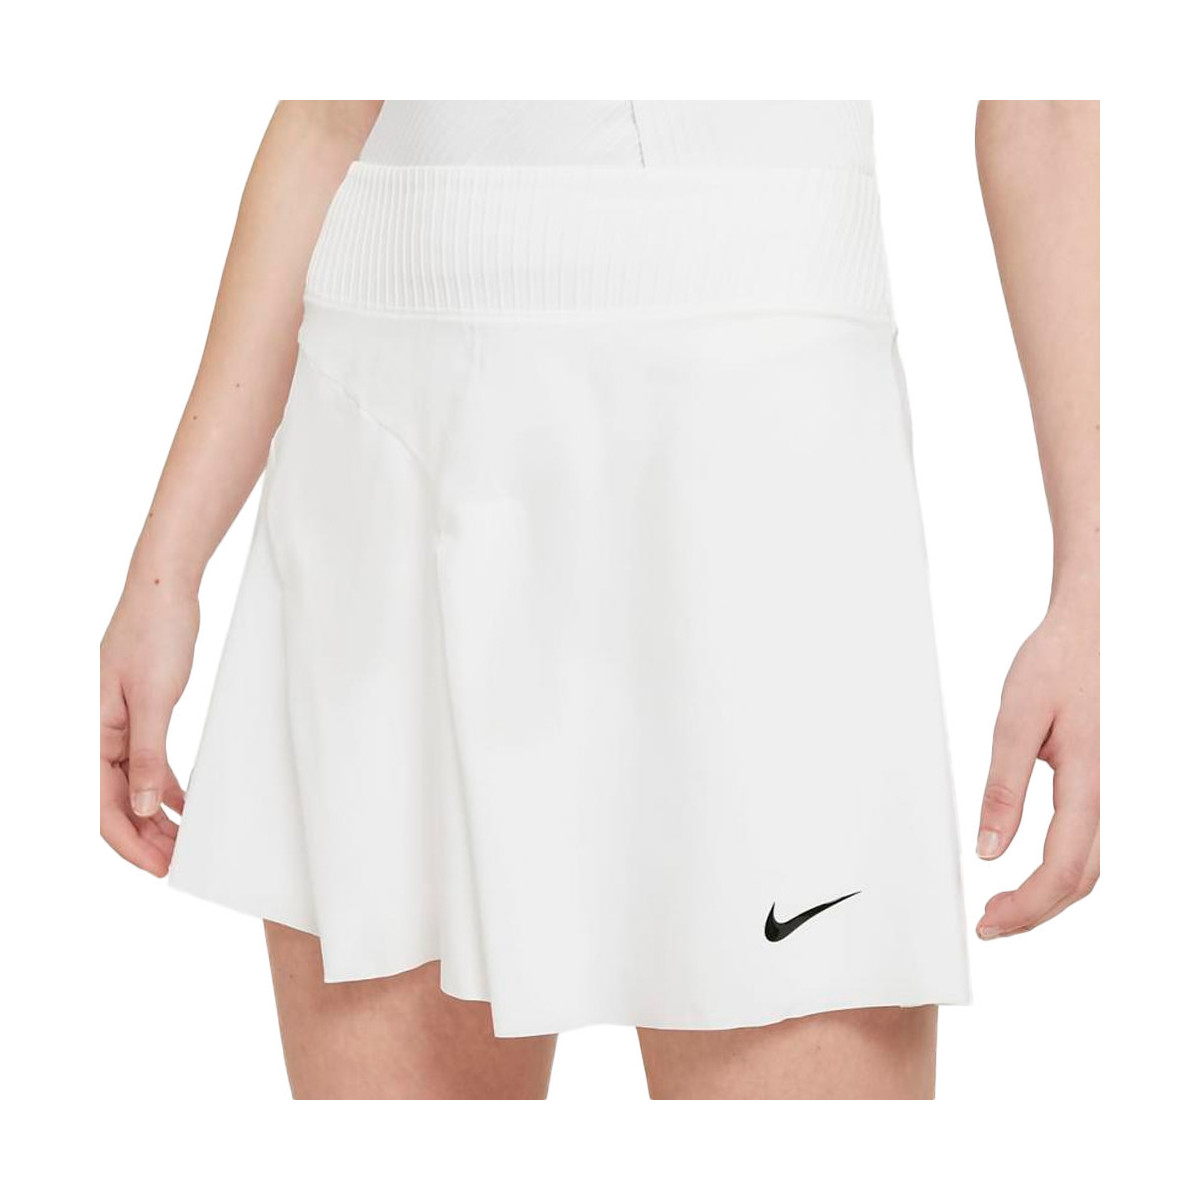 Textiel Dames Rokken Nike  Wit